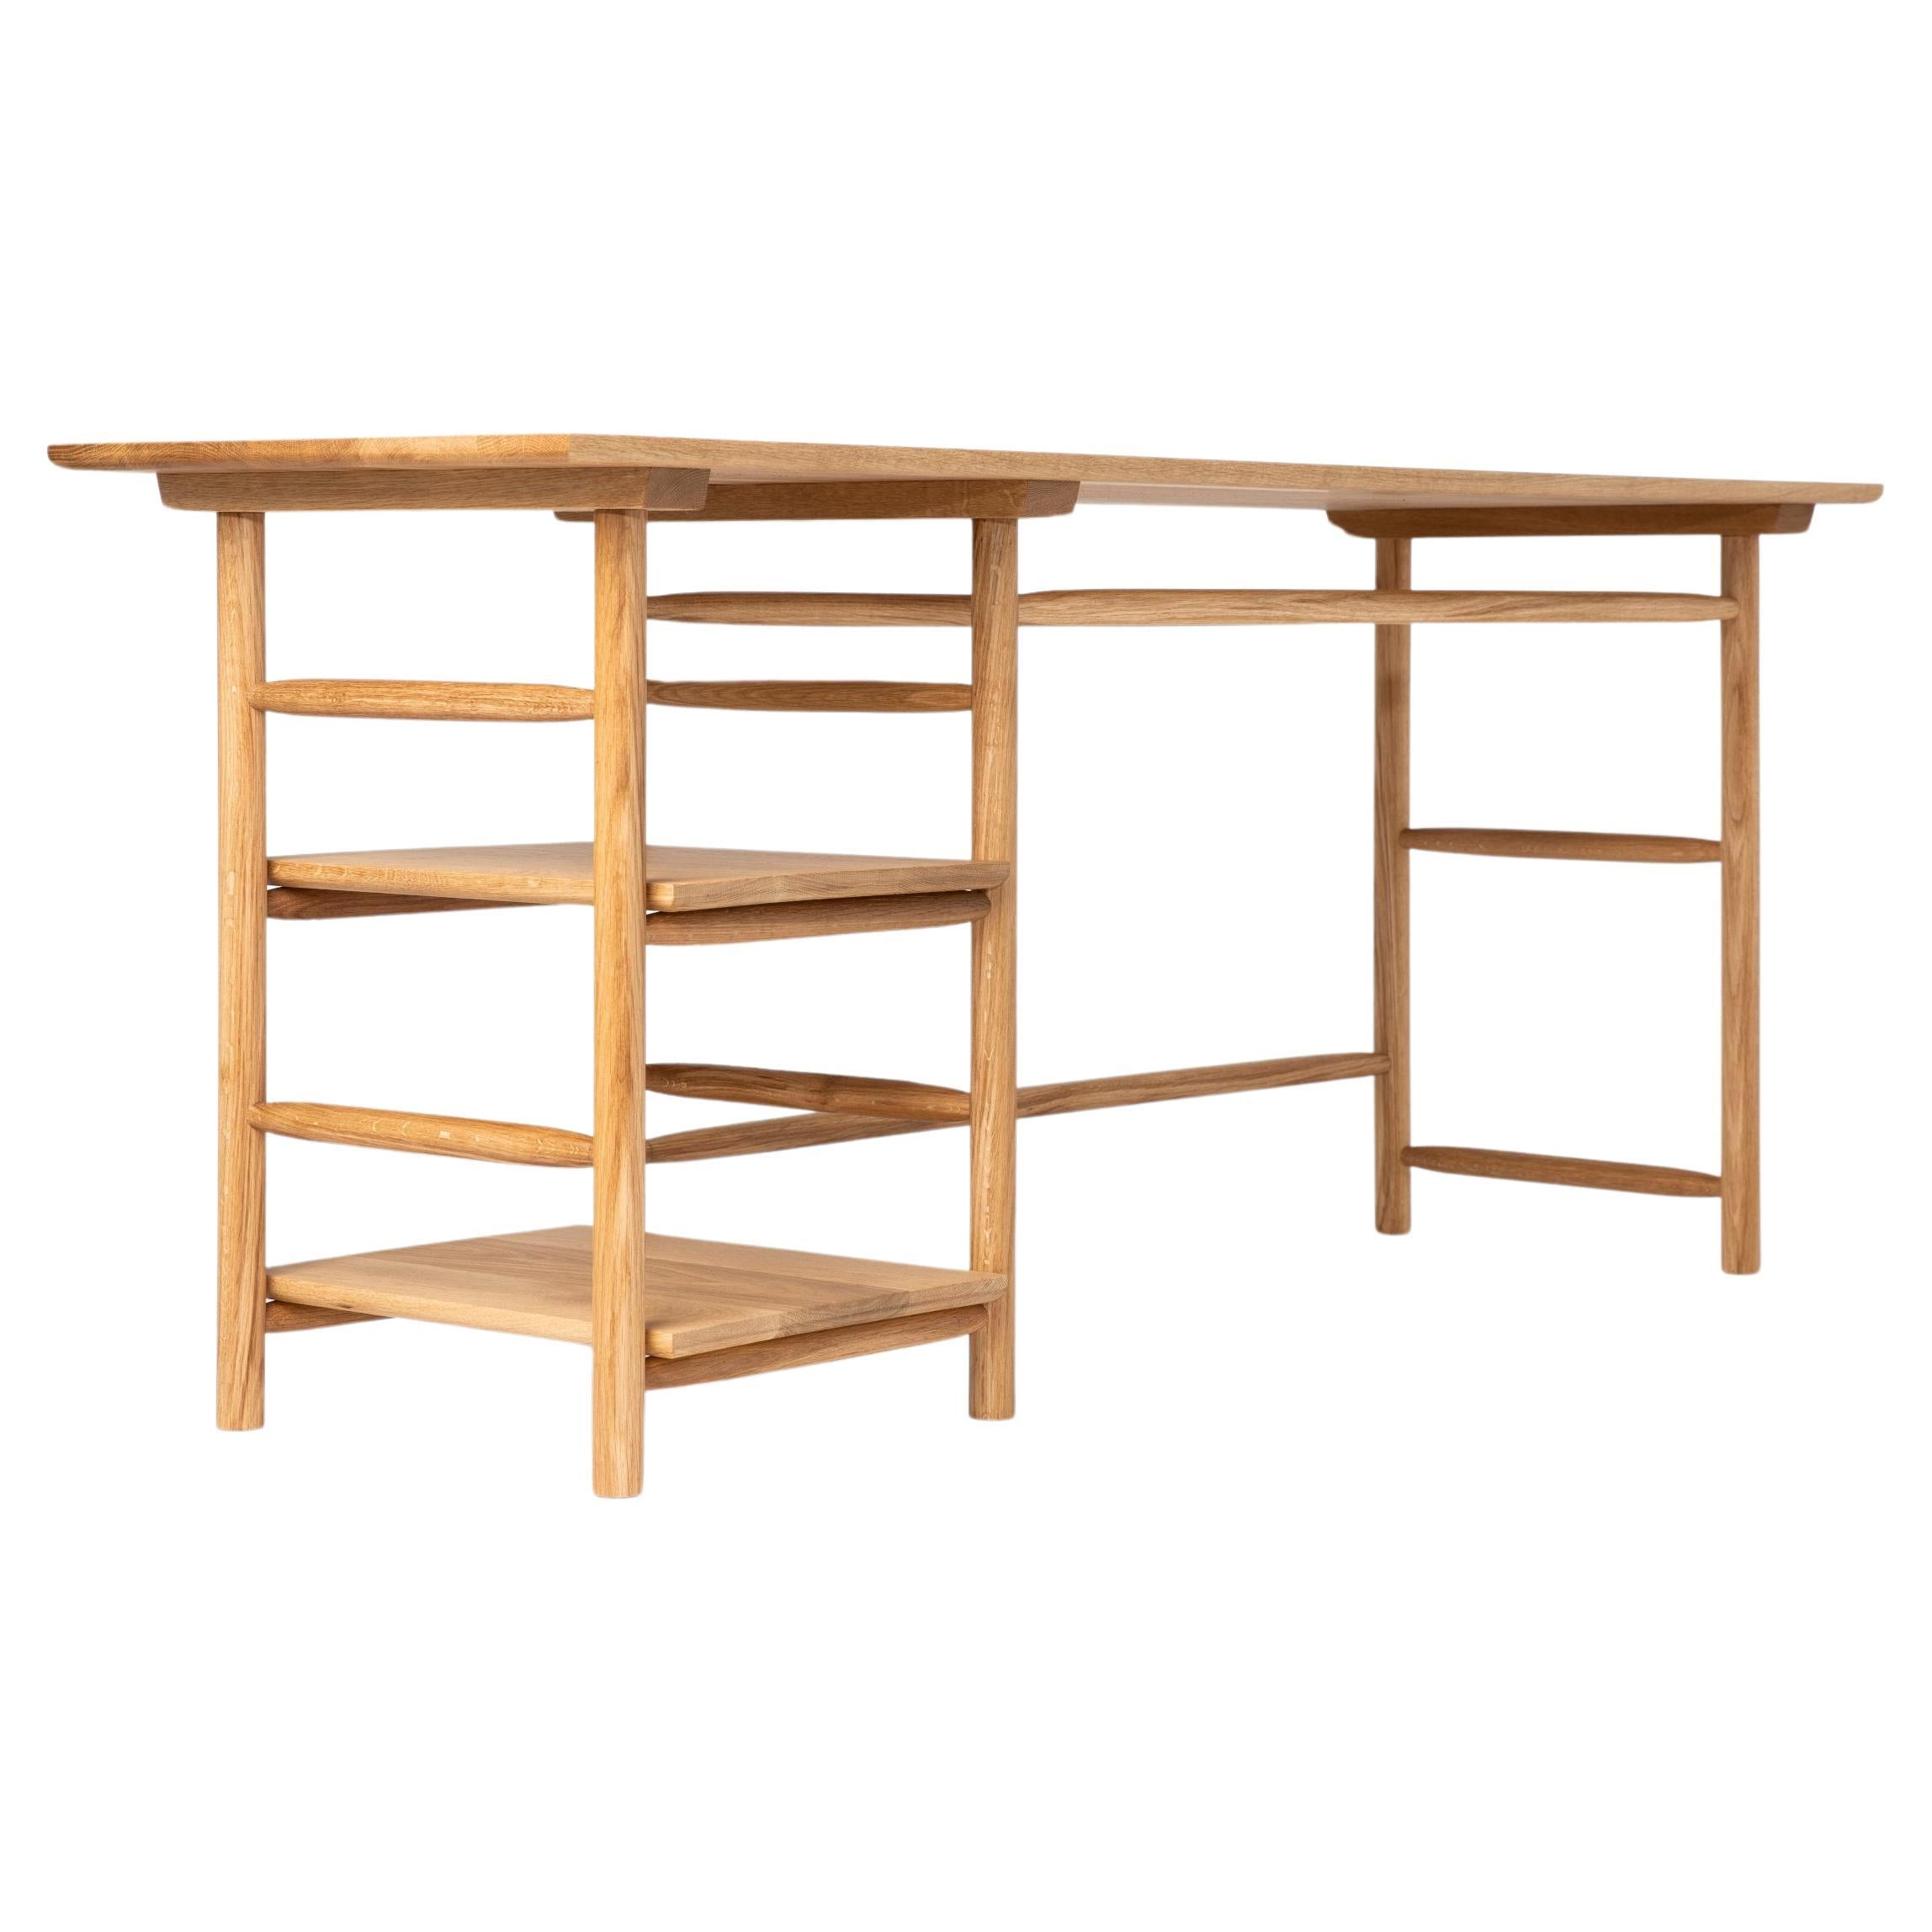 Oak-desk For Sale